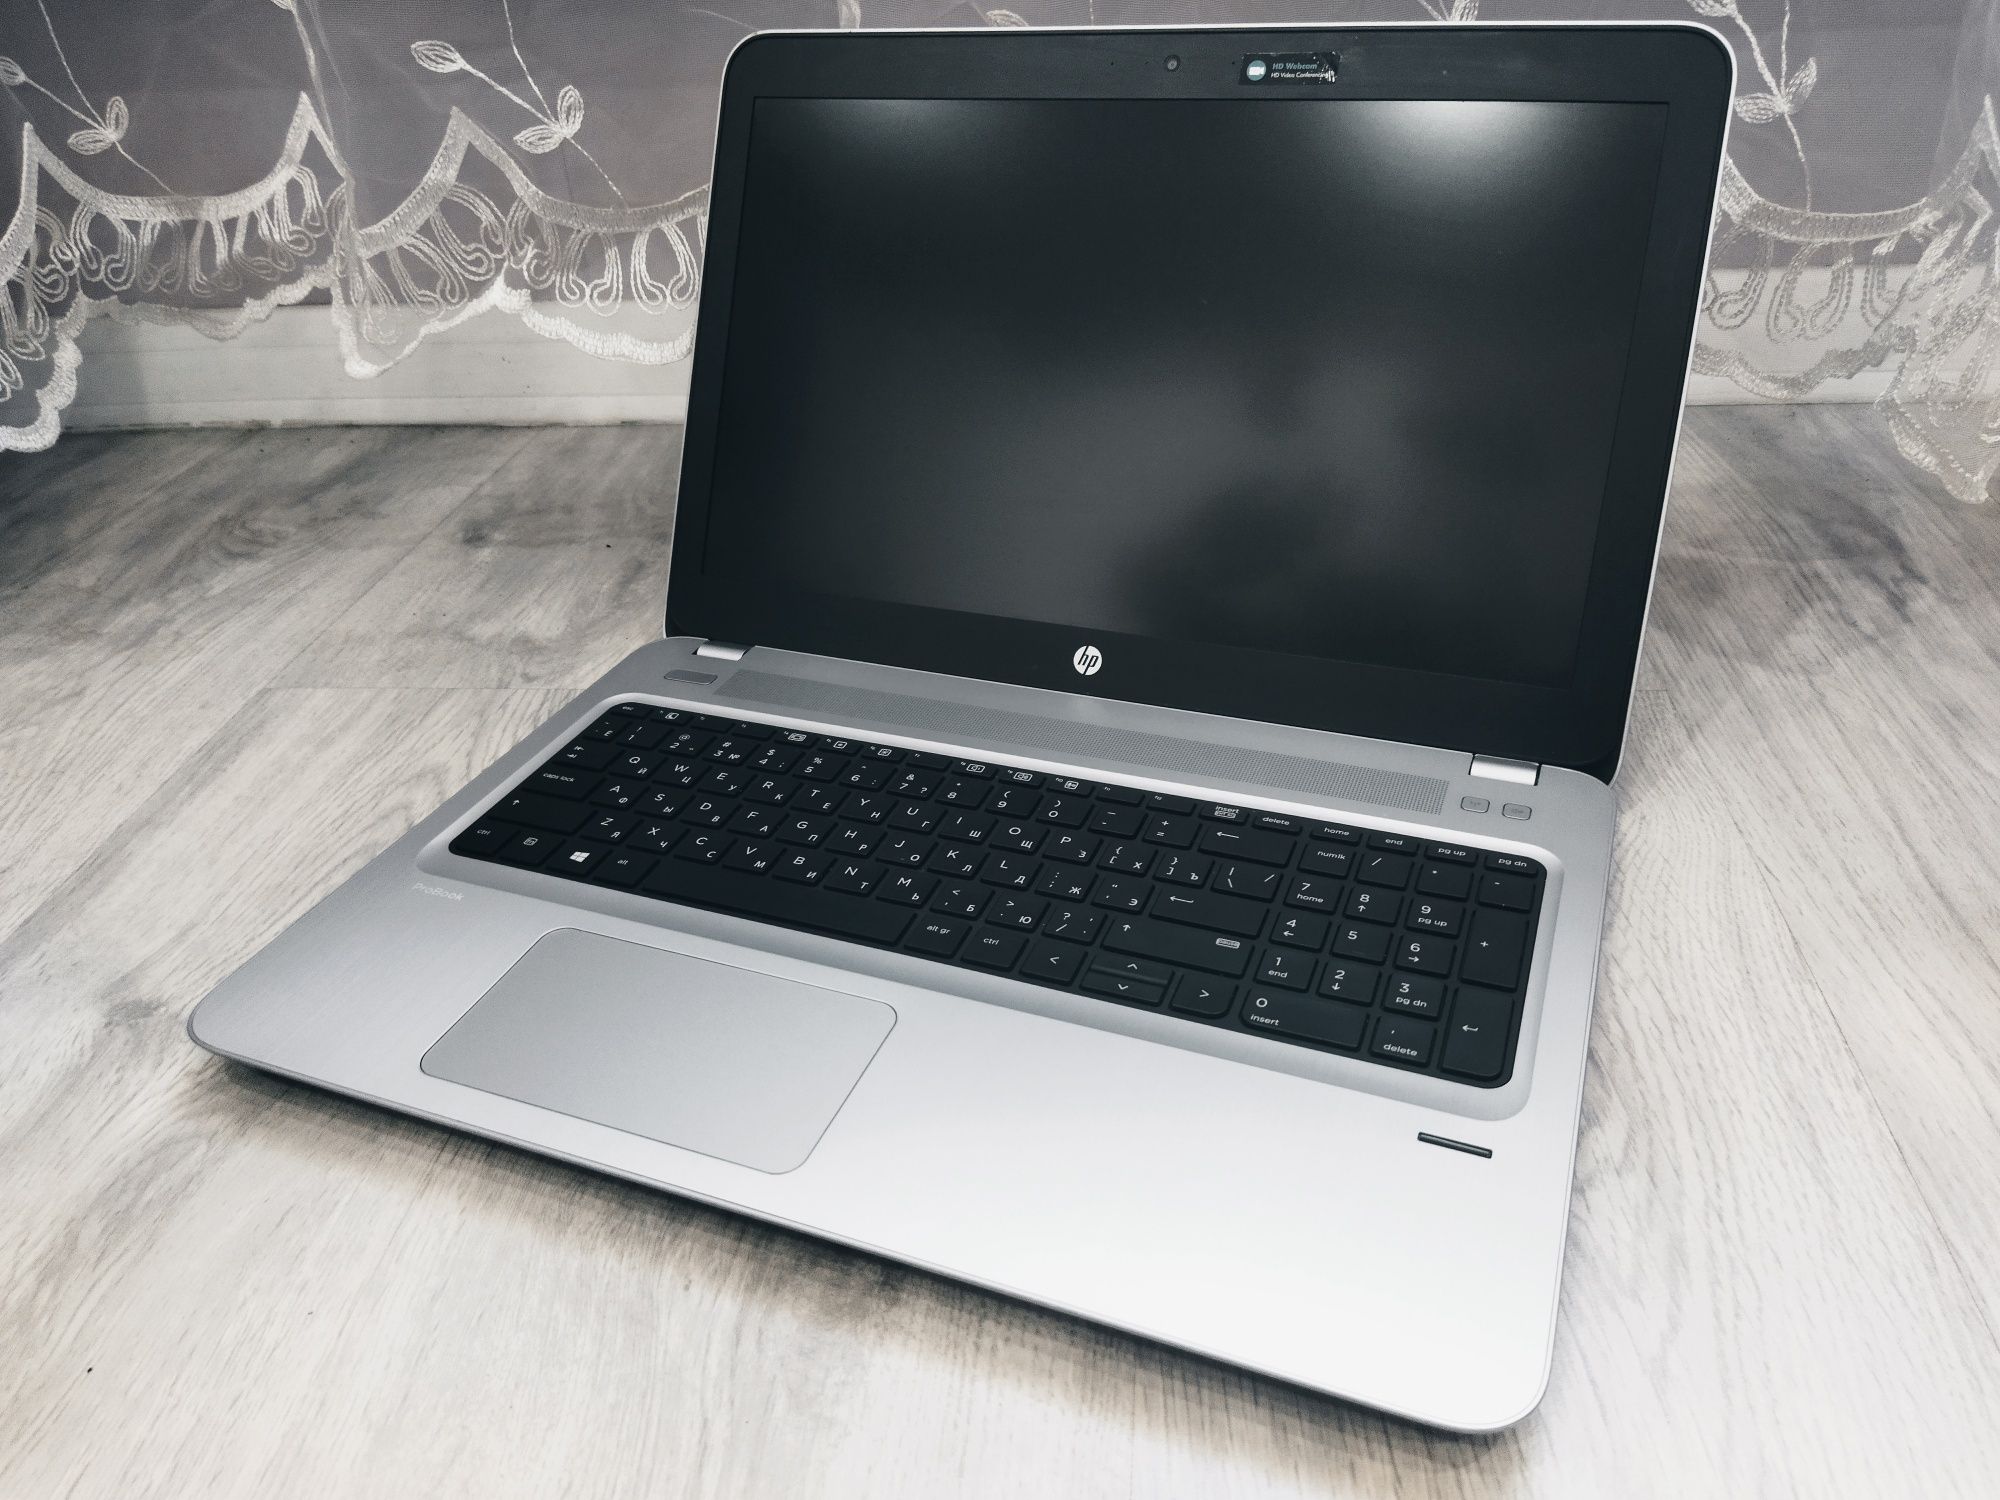 Идеальный ноутбук i5-7200/8Gb/FHD/GeForce 930mx